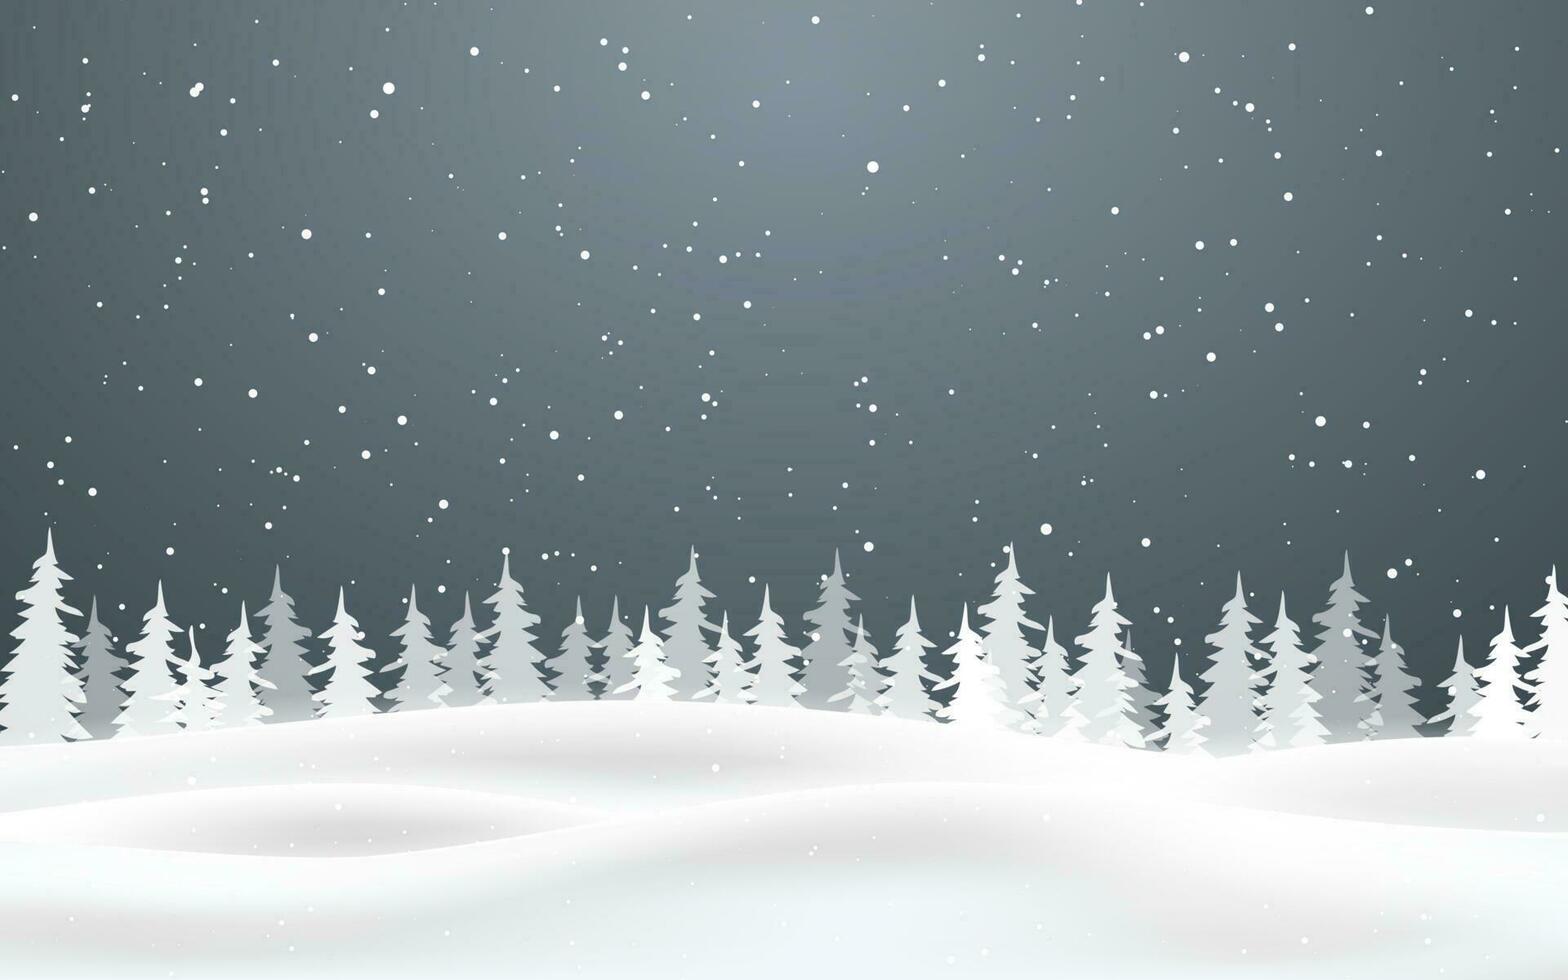 Weihnachten Hintergrund von fallen Schnee. Winter Nacht. Weihnachten Karte Design Vektor Illustration